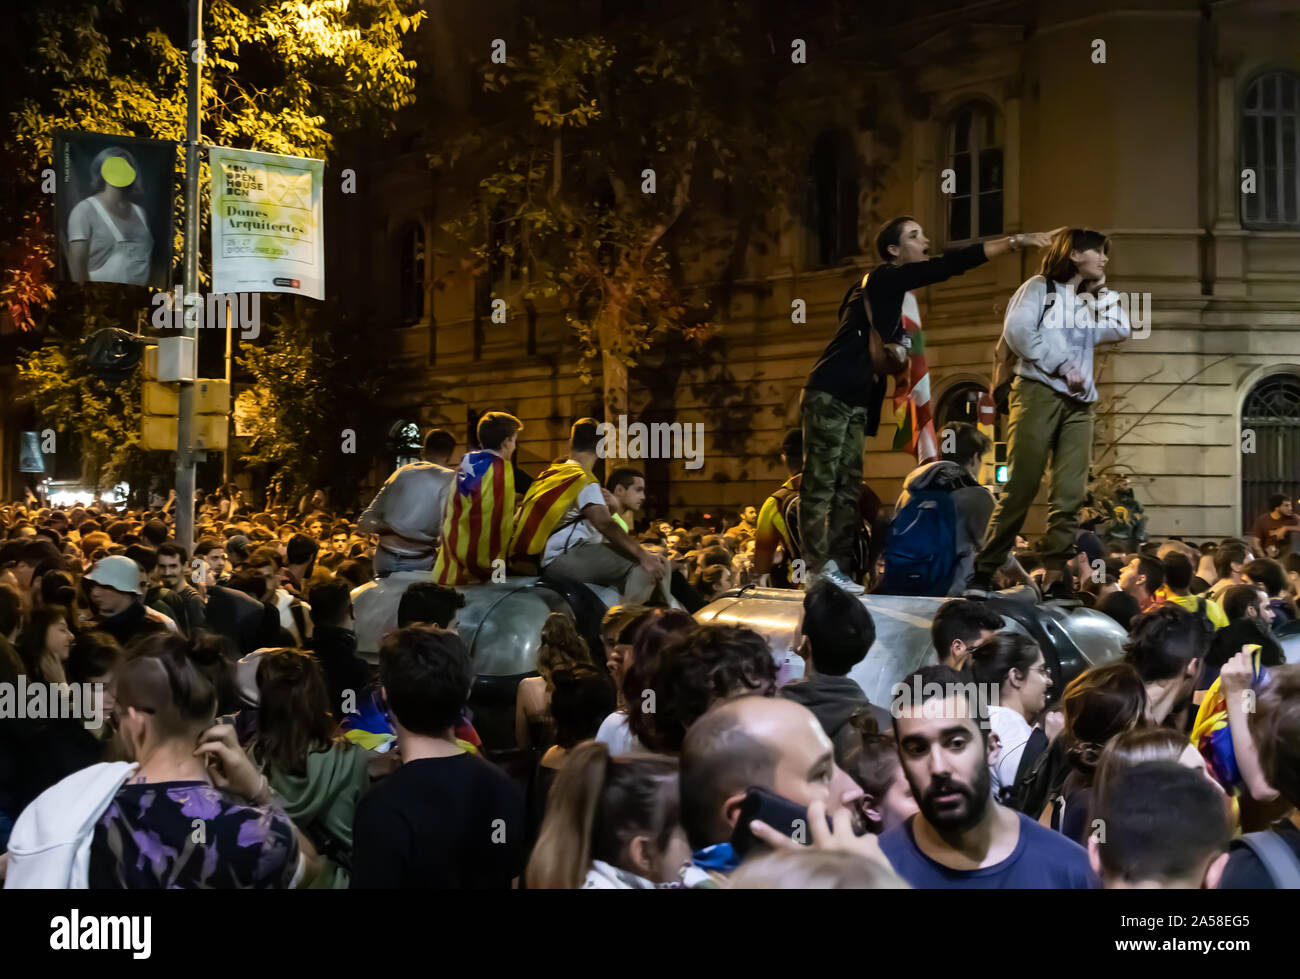 Barcelona, Spanien - 18. Oktober 2019: Proteste während des Generalstreiks von Katalonien in der Nähe von Via Laietana statt. Rallye namens Märsche für die Freiheit. Stockfoto